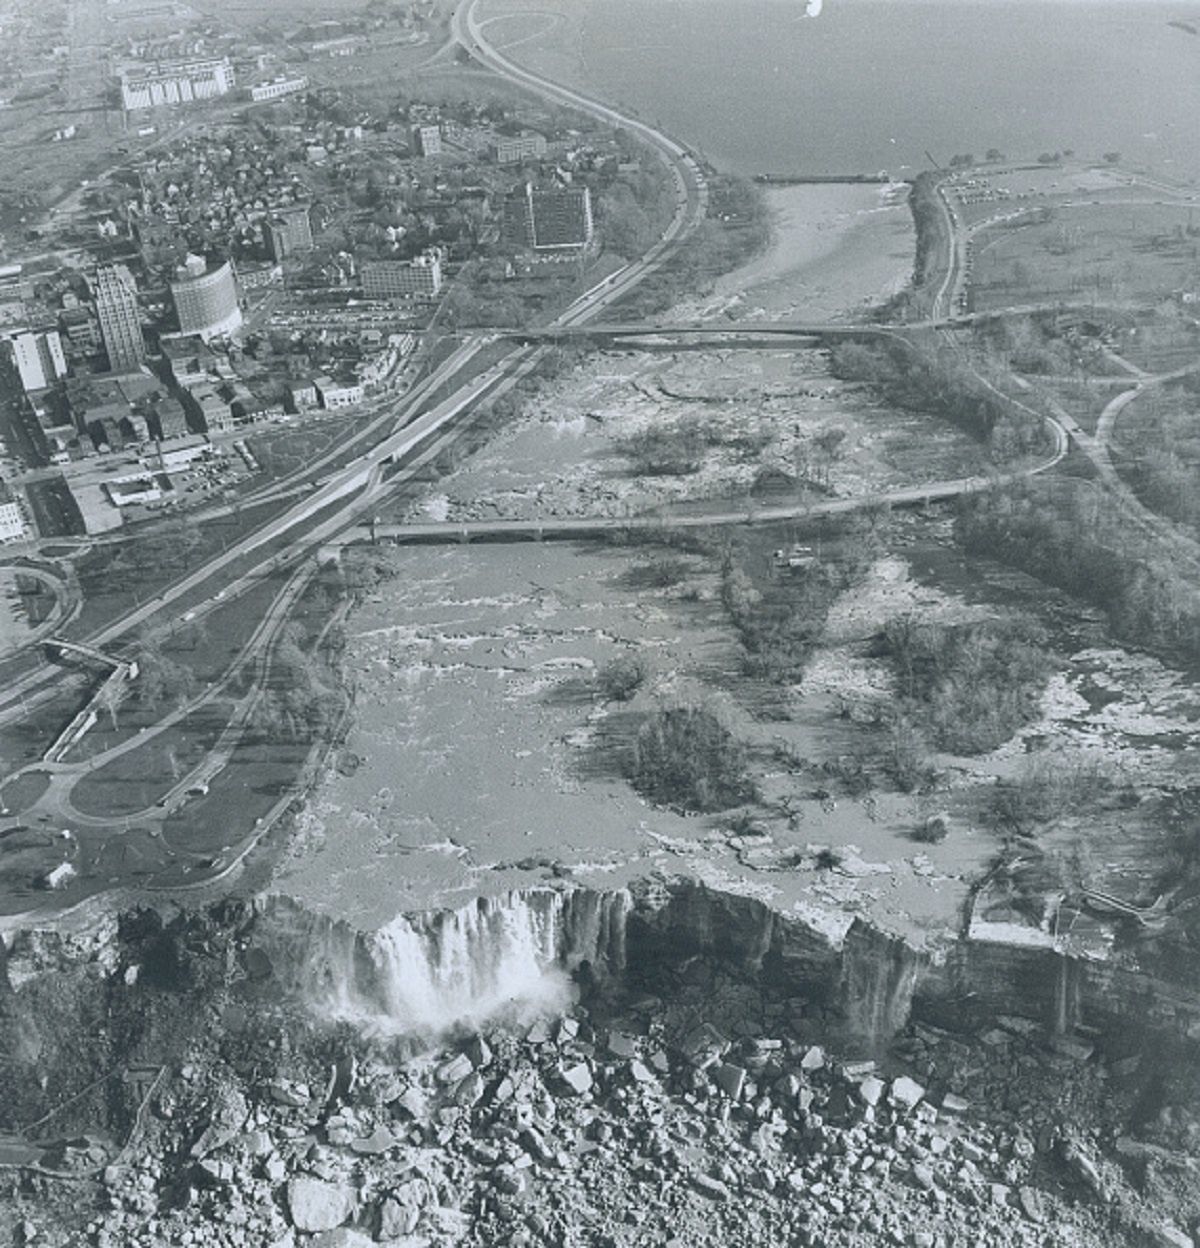 "The shutdown" of Niagara Falls in 1969